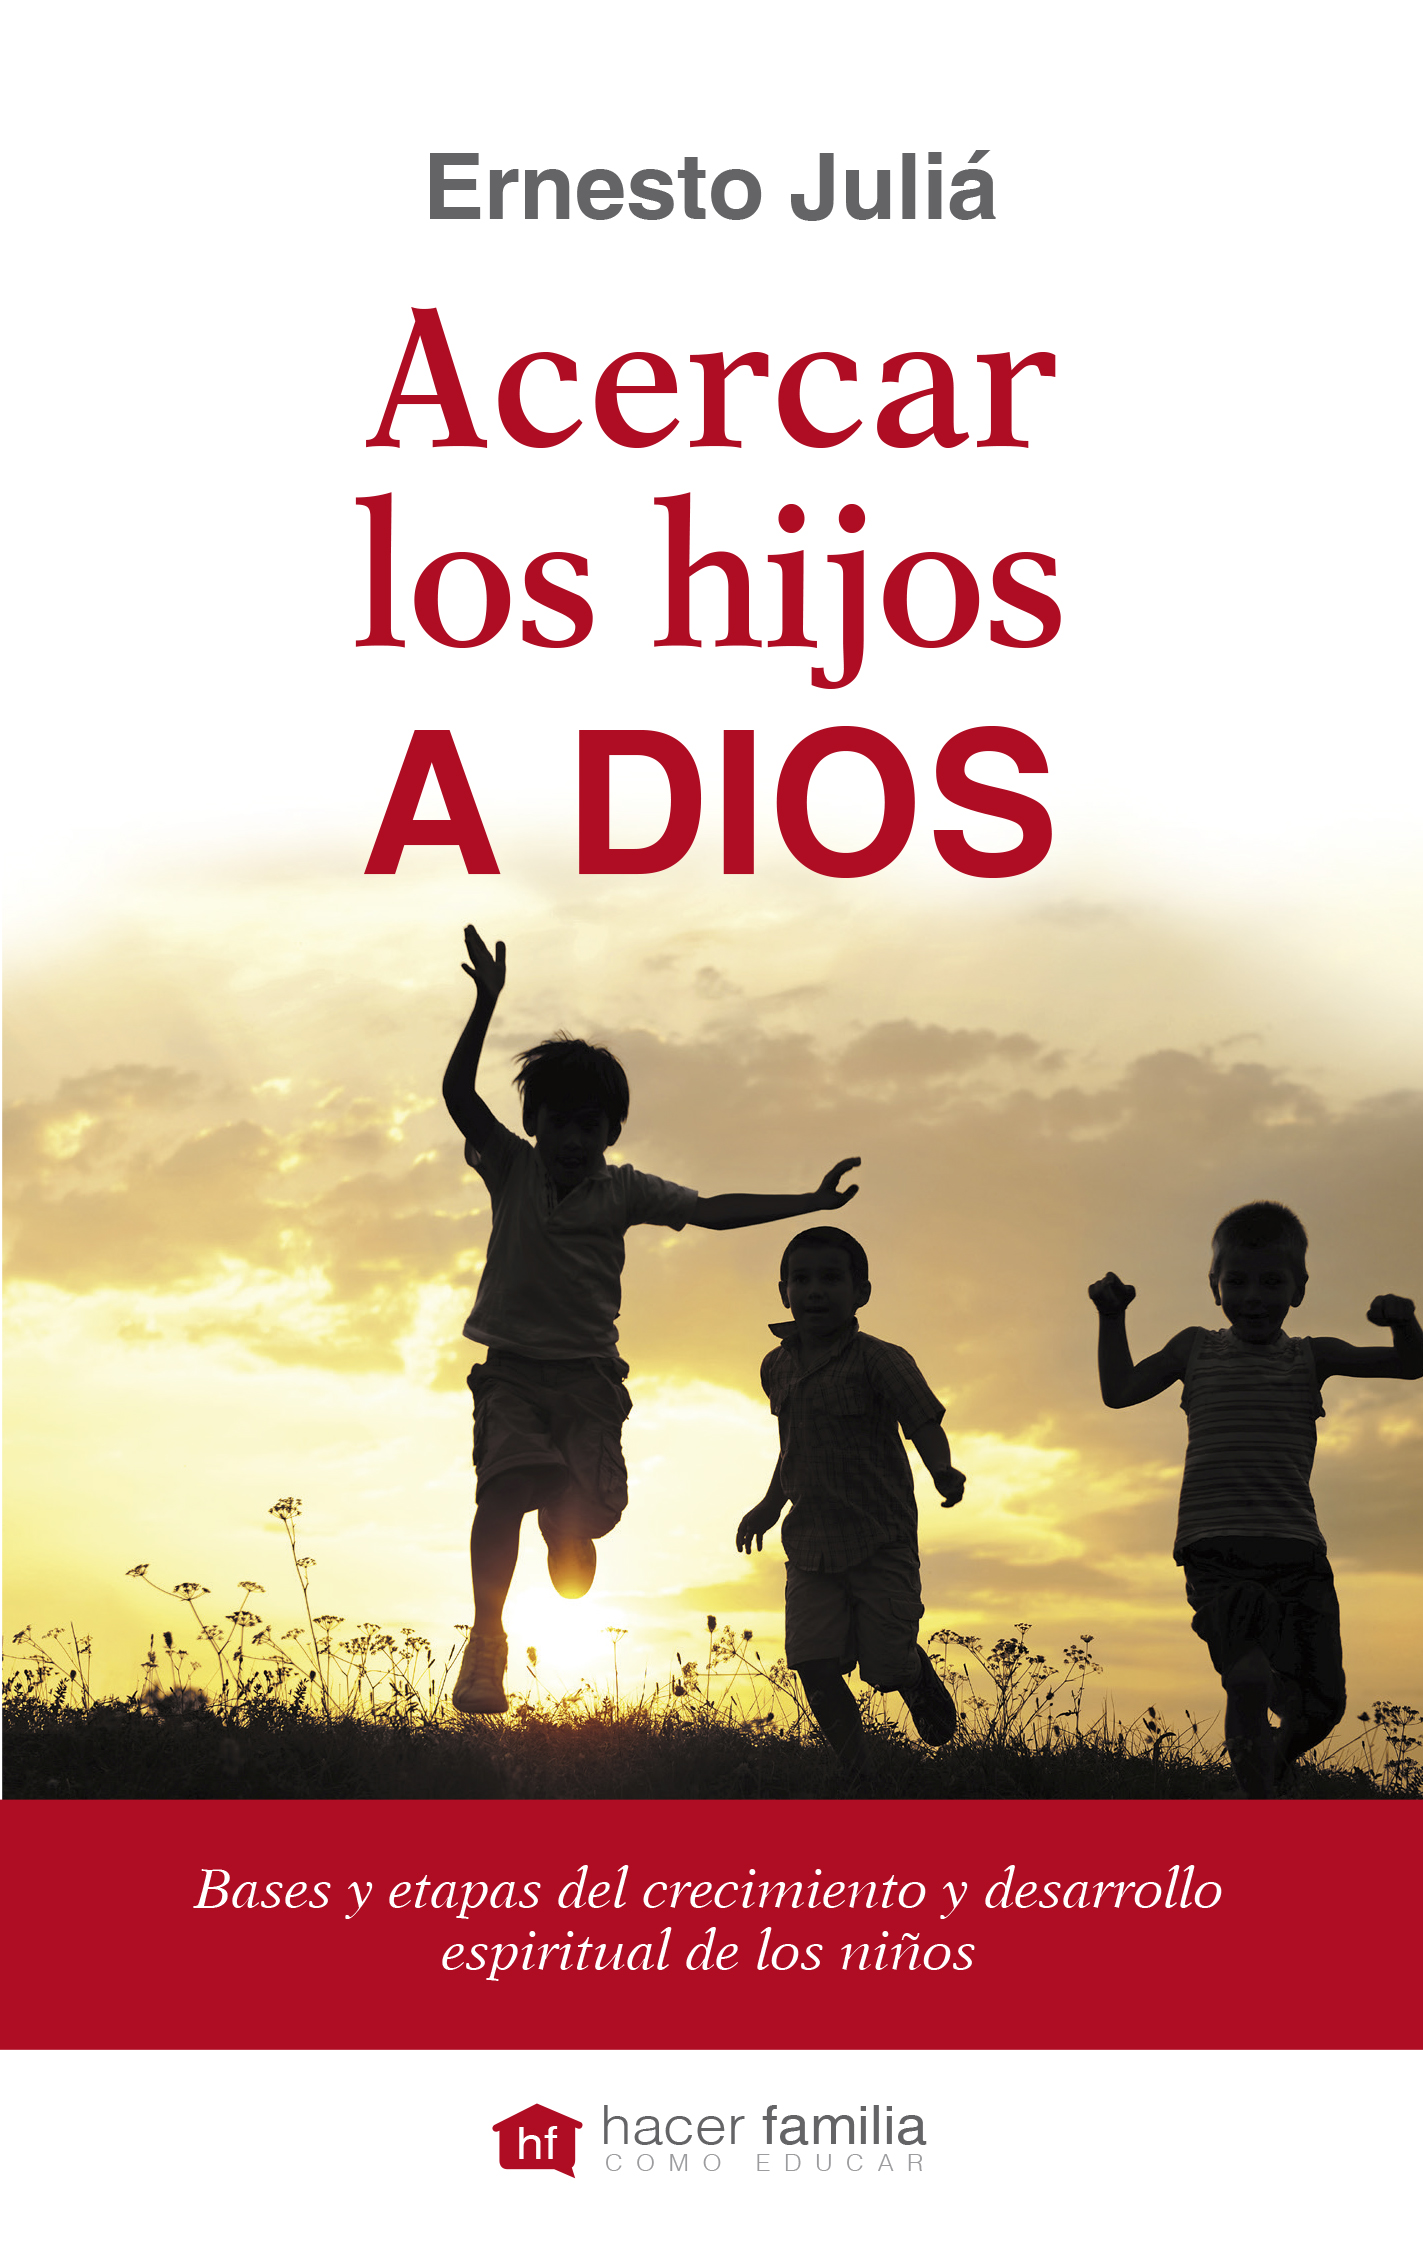 Libro: Acercar los hijos a Dios de Ernesto Juliá